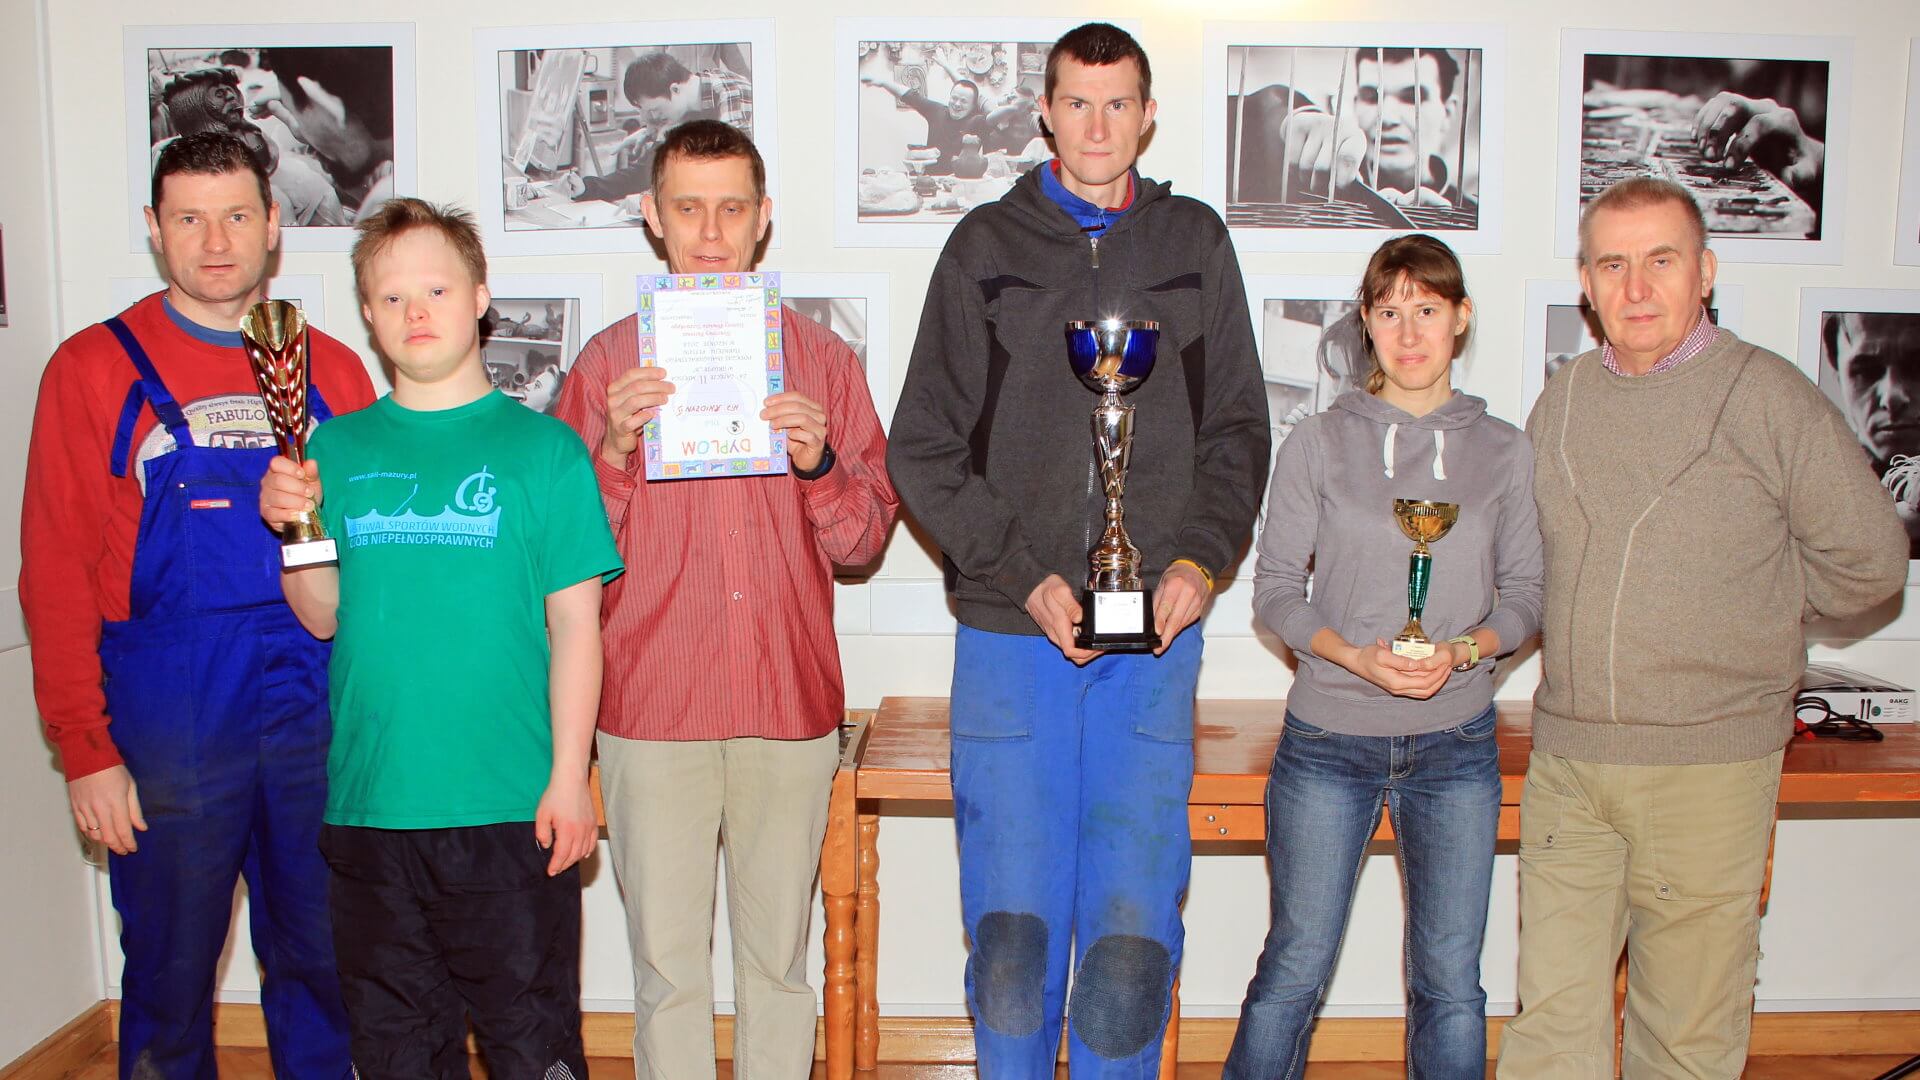 Tenisiści z Warsztatu Terapii Zajęciowej w Kwidzynie z nagrodami